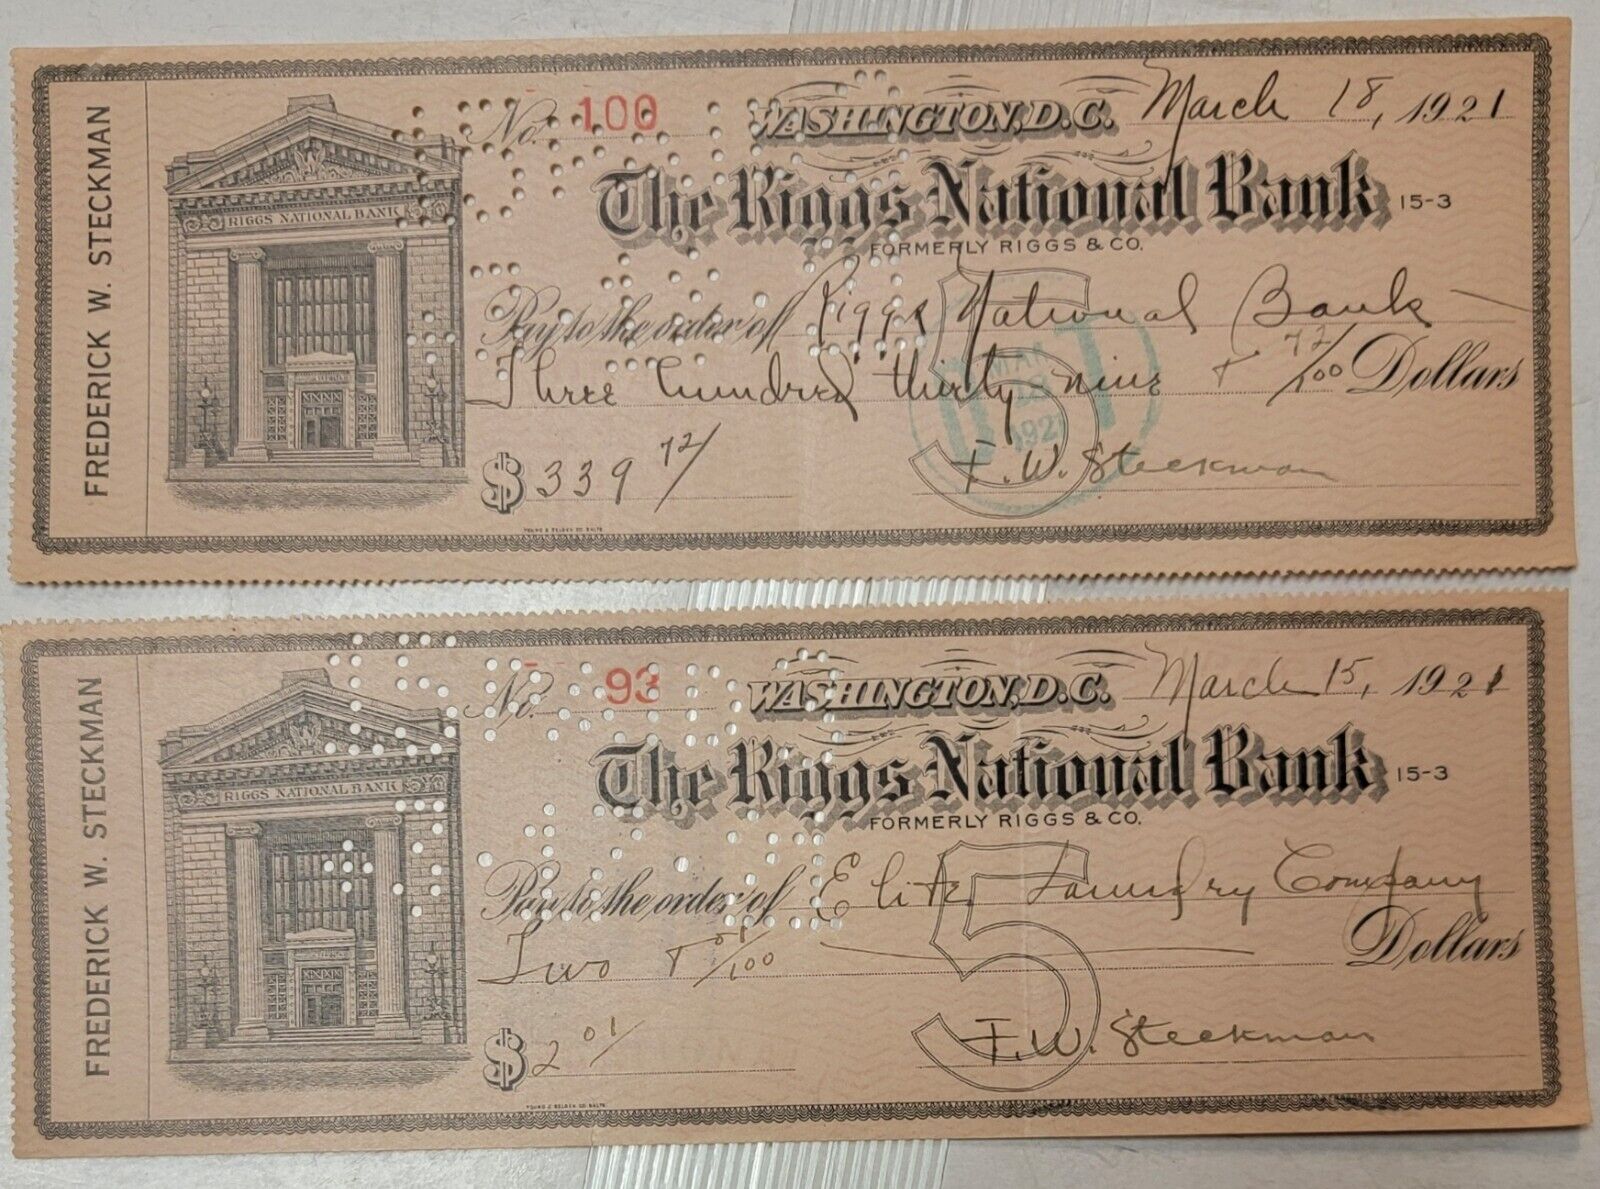 2 1921 RIGGS WASHINGTON D.C. BANK CHECKS E316